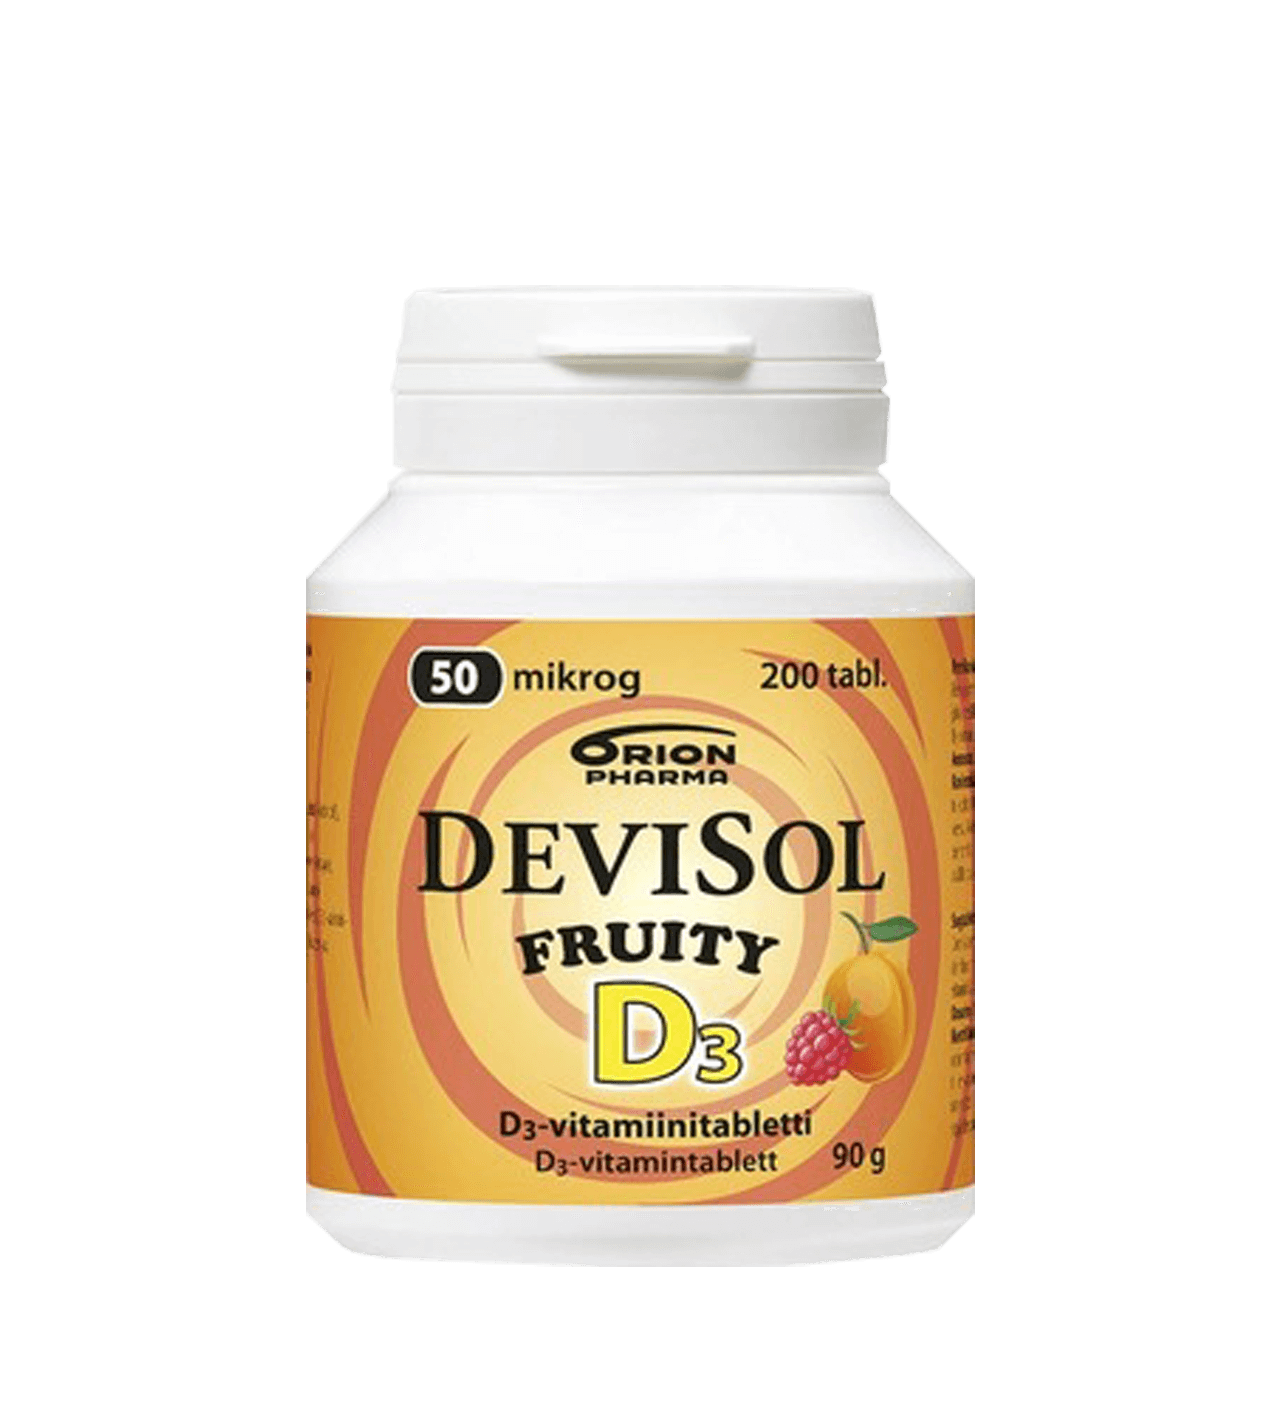 Девисол д3. Devisol d3. Витамин д3 девисол. Devisol Drops d3 50 mikrog. Витамины девисол д3 из Финляндии.